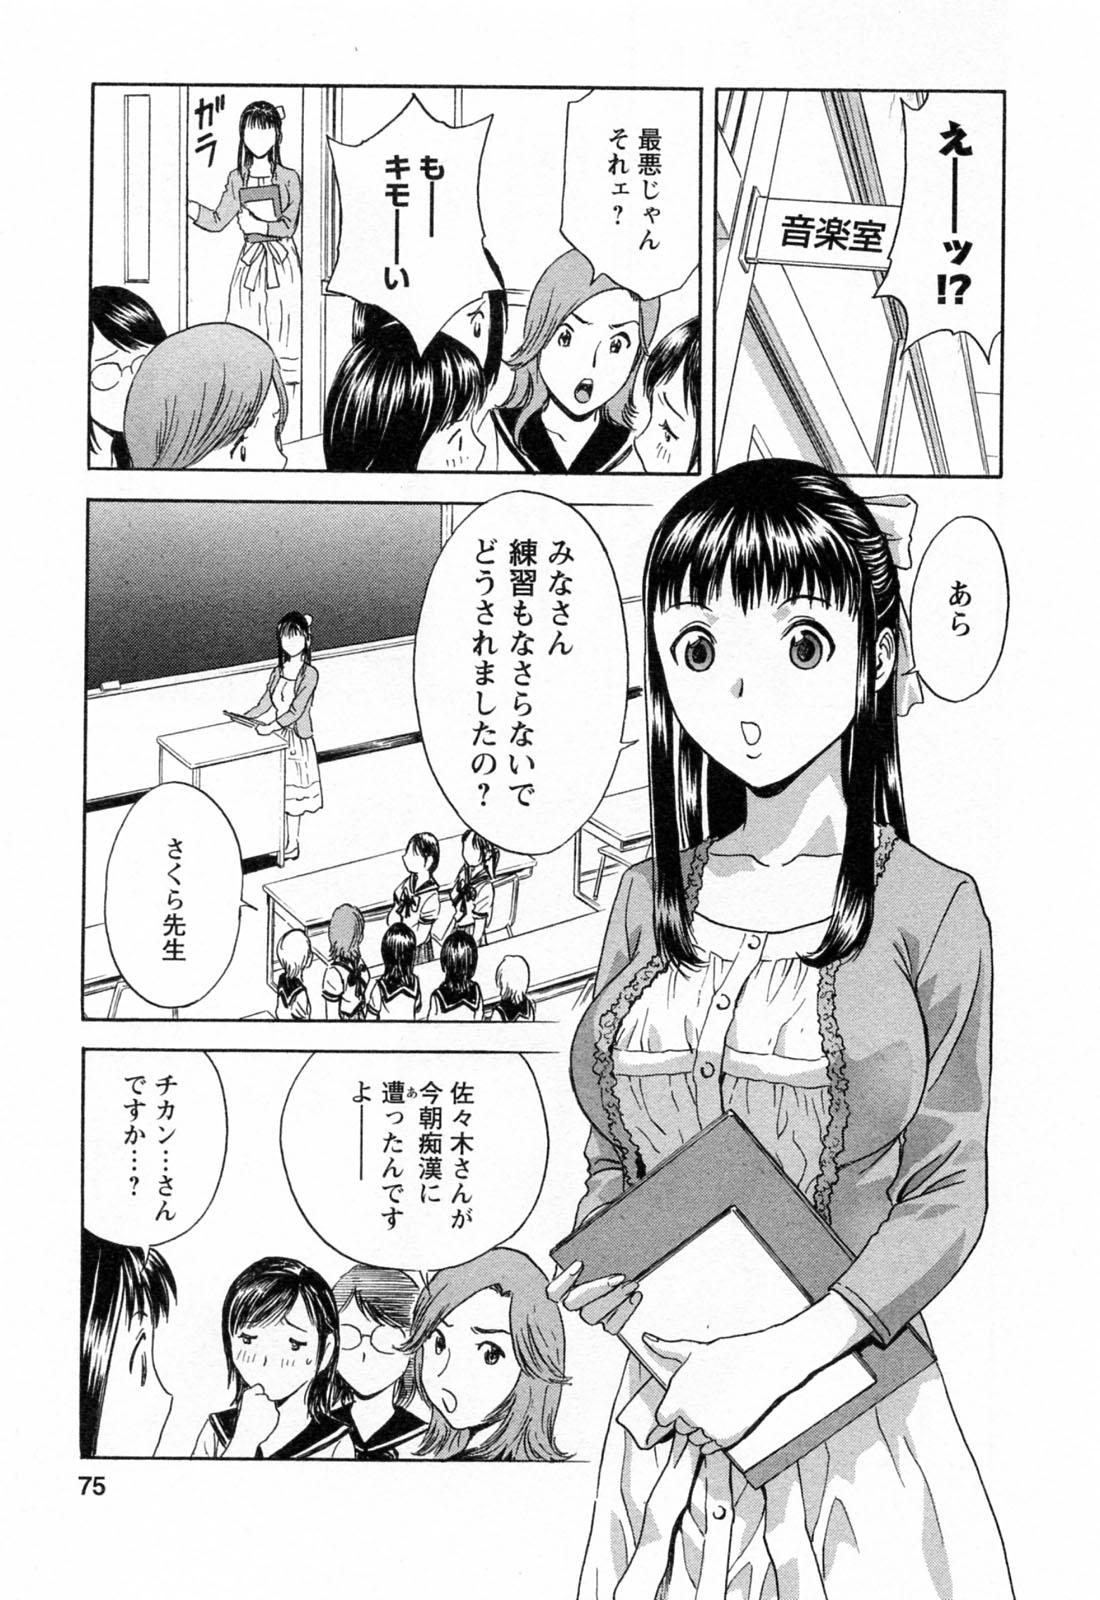 [Hidemaru] Mo-Retsu! Boin Sensei (Boing Boing Teacher) Vol.4 76